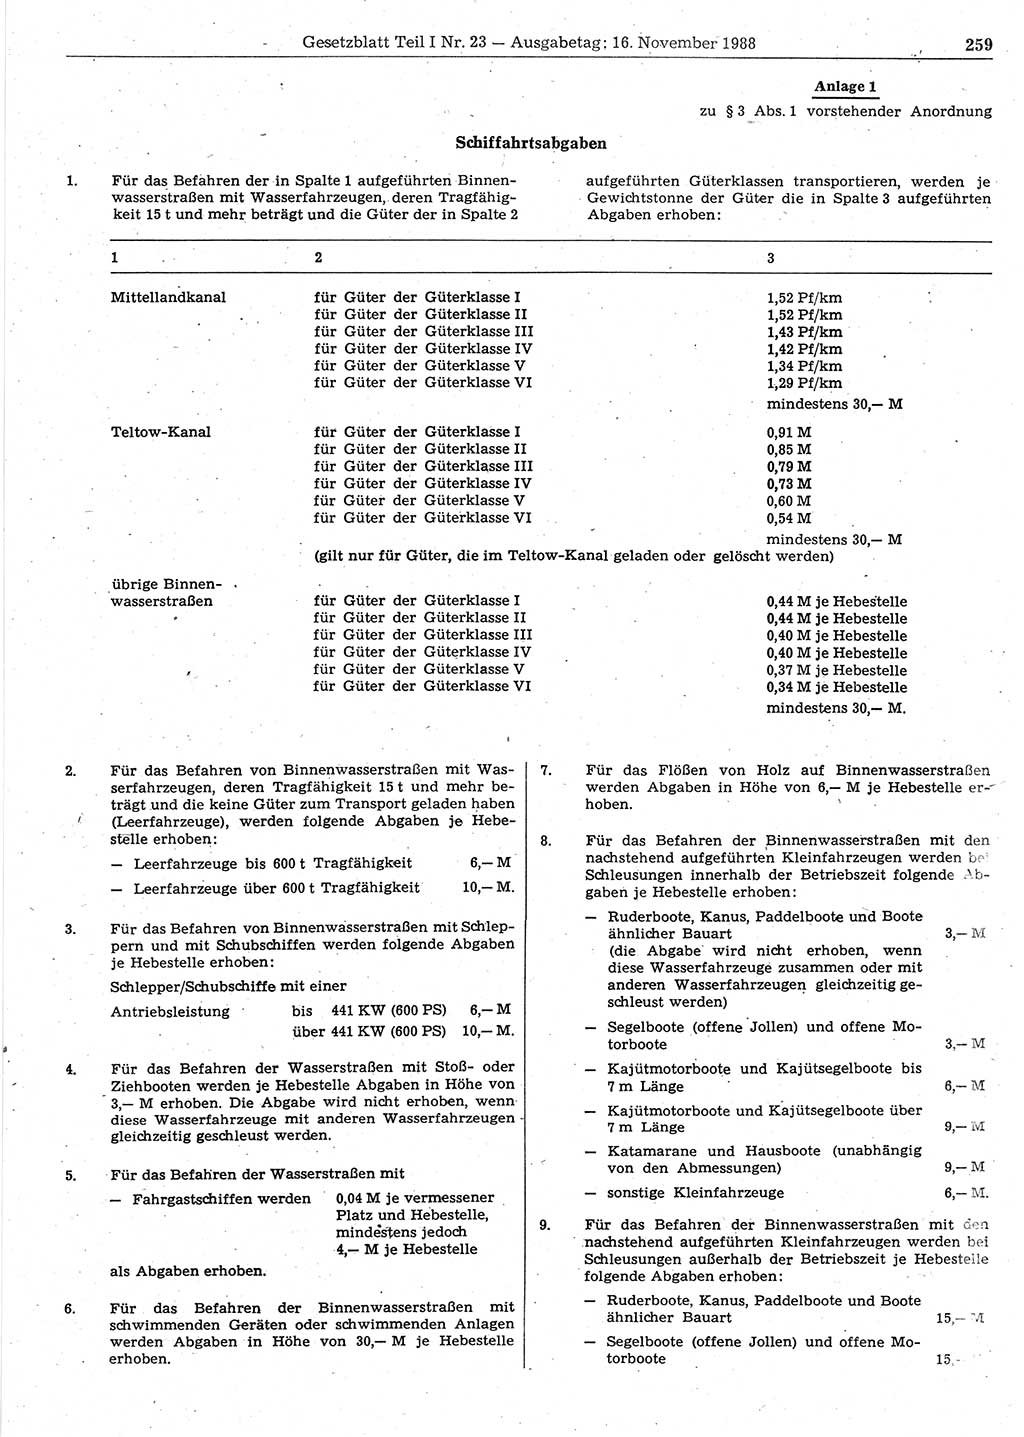 Gesetzblatt (GBl.) der Deutschen Demokratischen Republik (DDR) Teil Ⅰ 1988, Seite 259 (GBl. DDR Ⅰ 1988, S. 259)